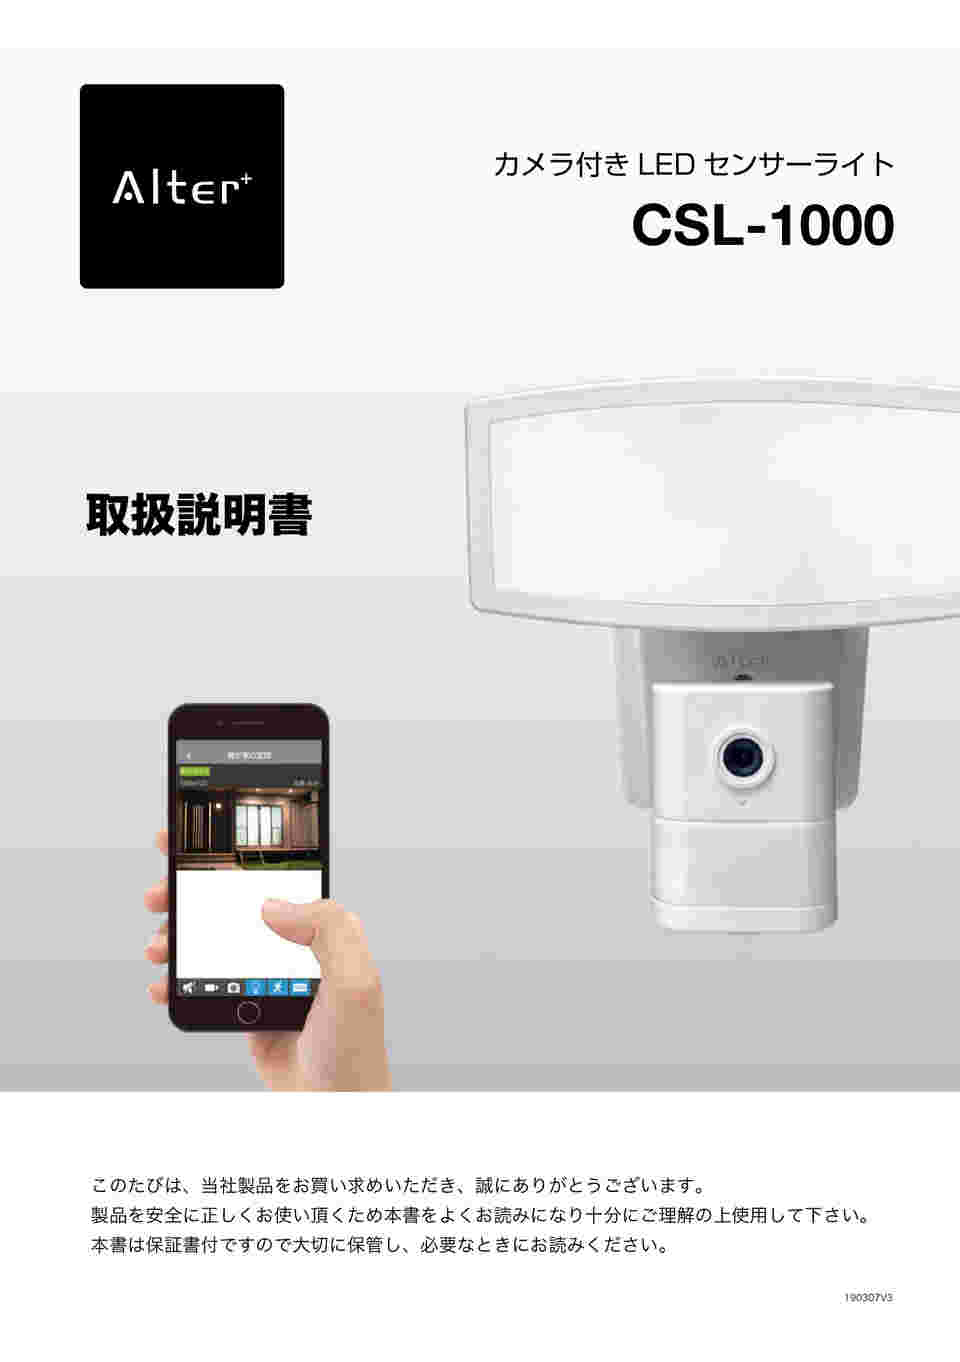 64-9111-90 Alter+ カメラ付きLEDセンサーライト CSL-1000 【AXEL